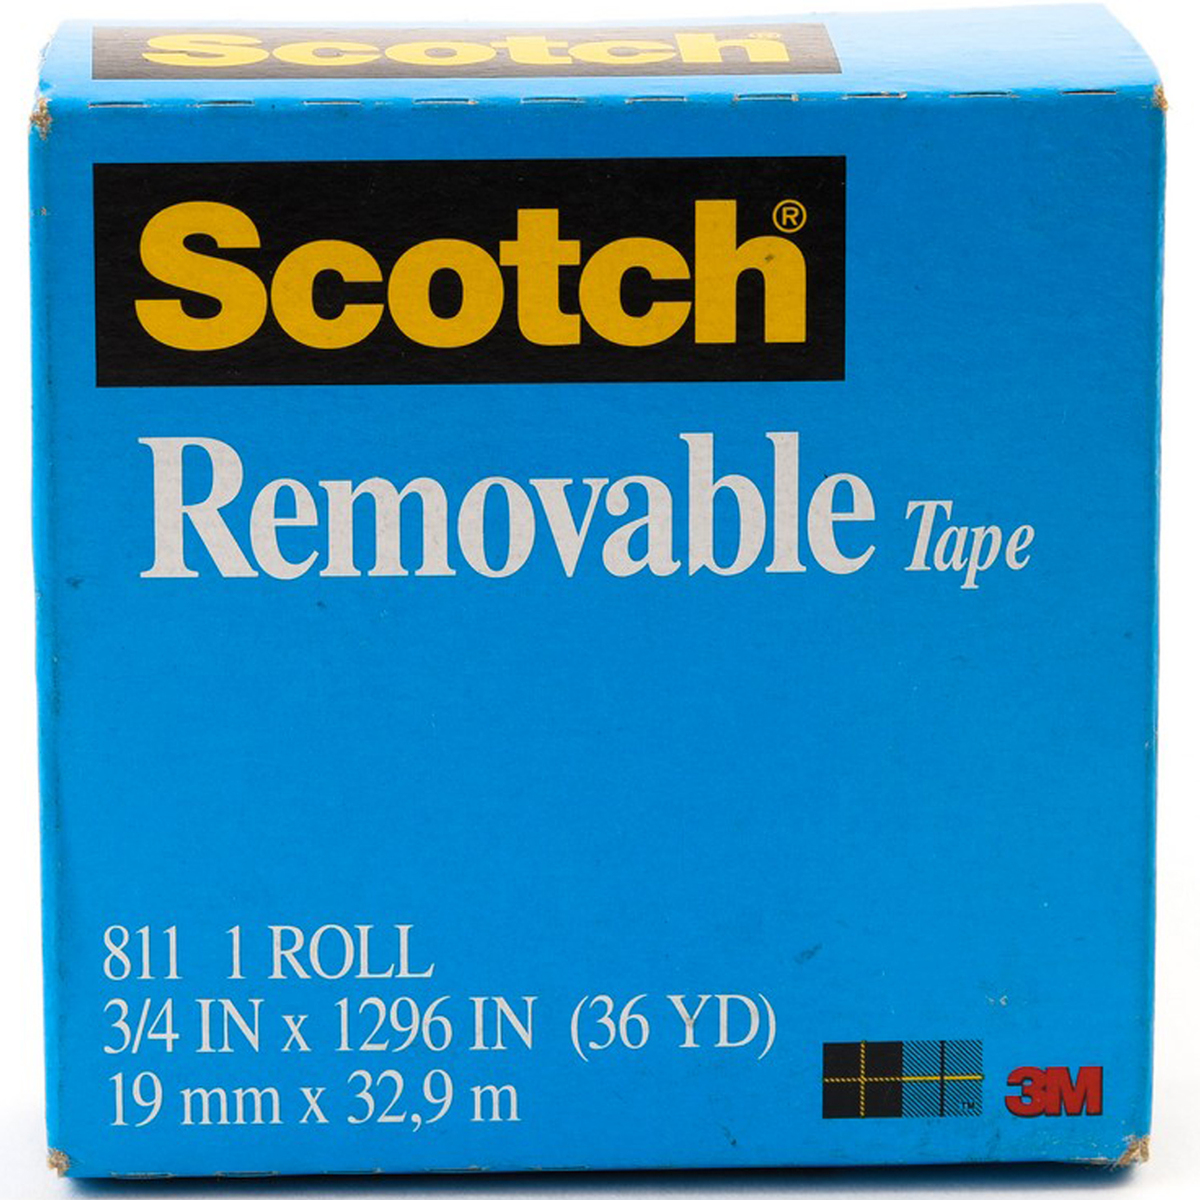 3M Scotch Magic Tape